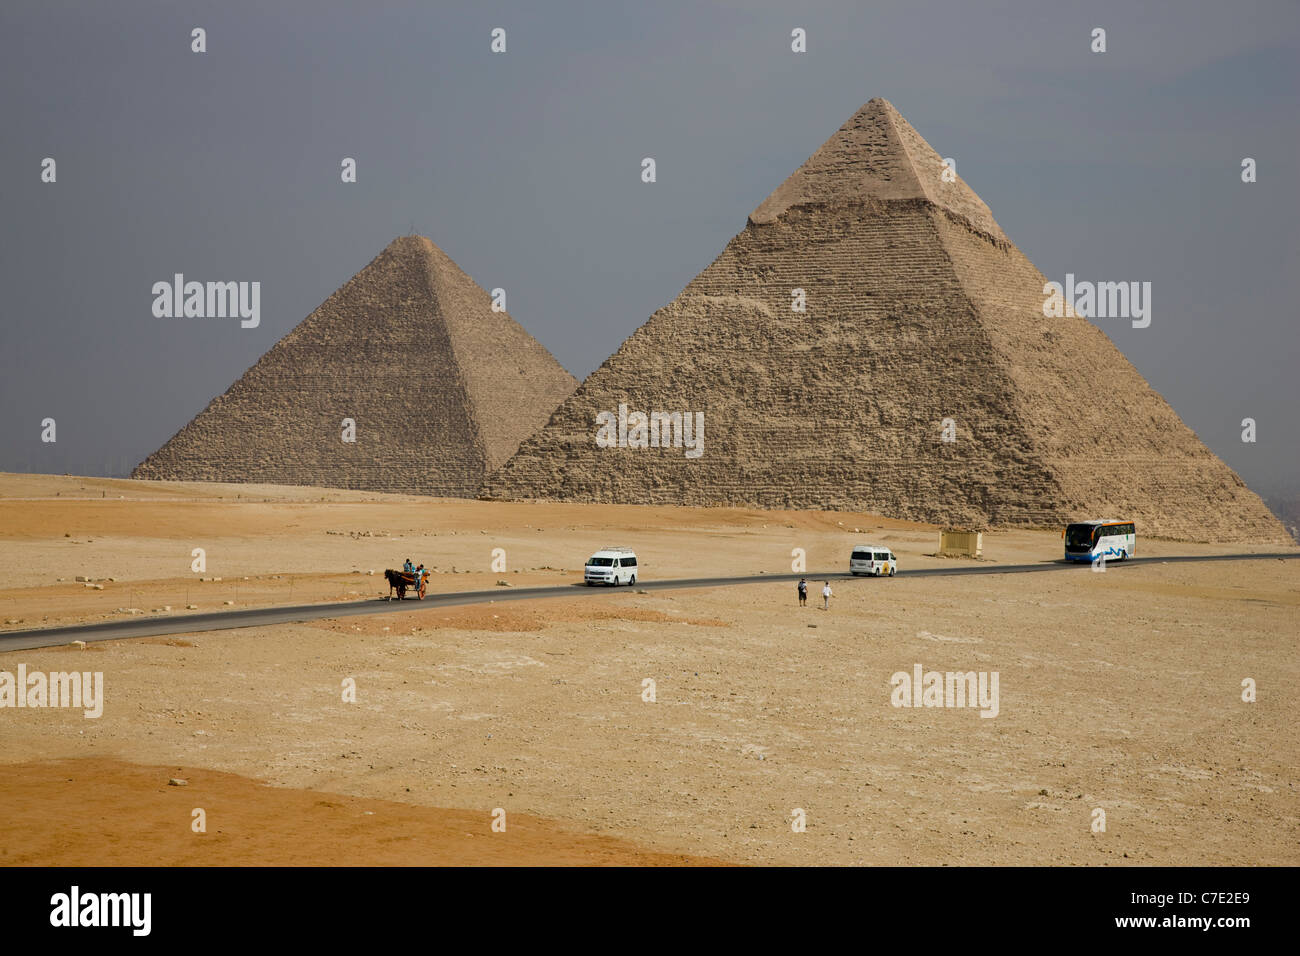 The pyramids at Gisa Stock Photo